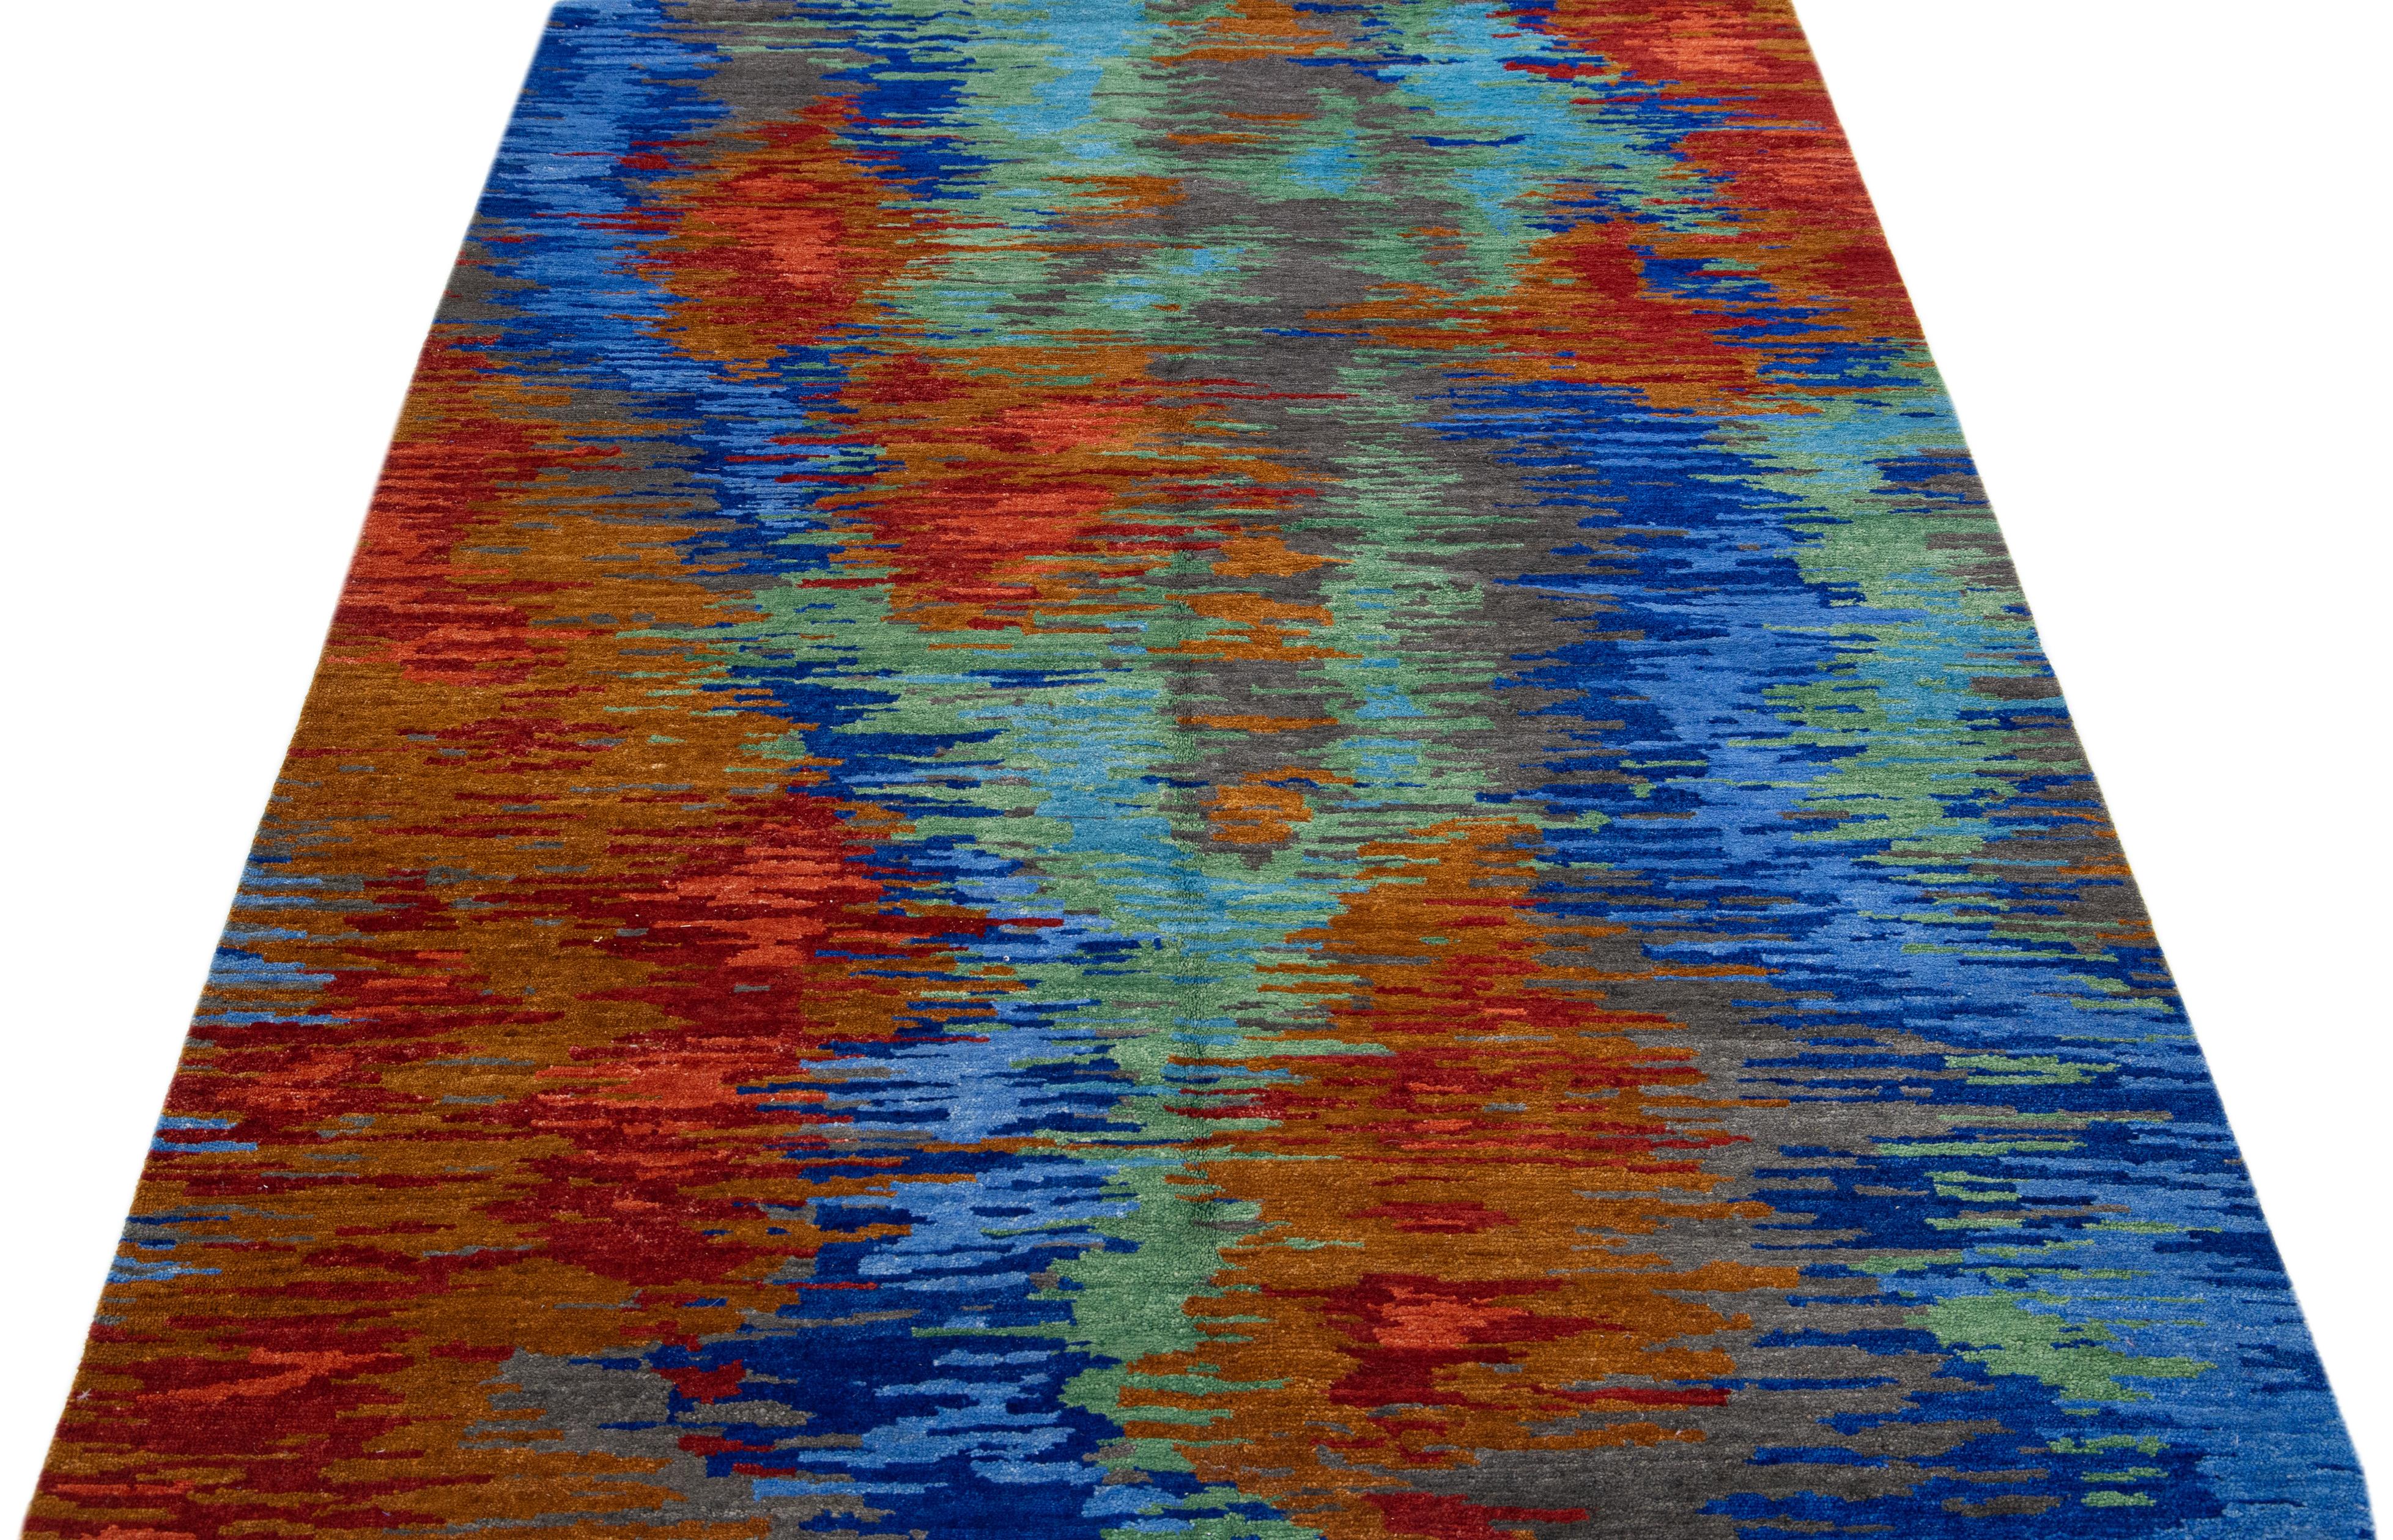 Magnifique tapis tibétain moderne noué à la main en laine et en soie. Cette pièce présente un motif abstrait multicolore.

Ce tapis mesure 6' x 9'.